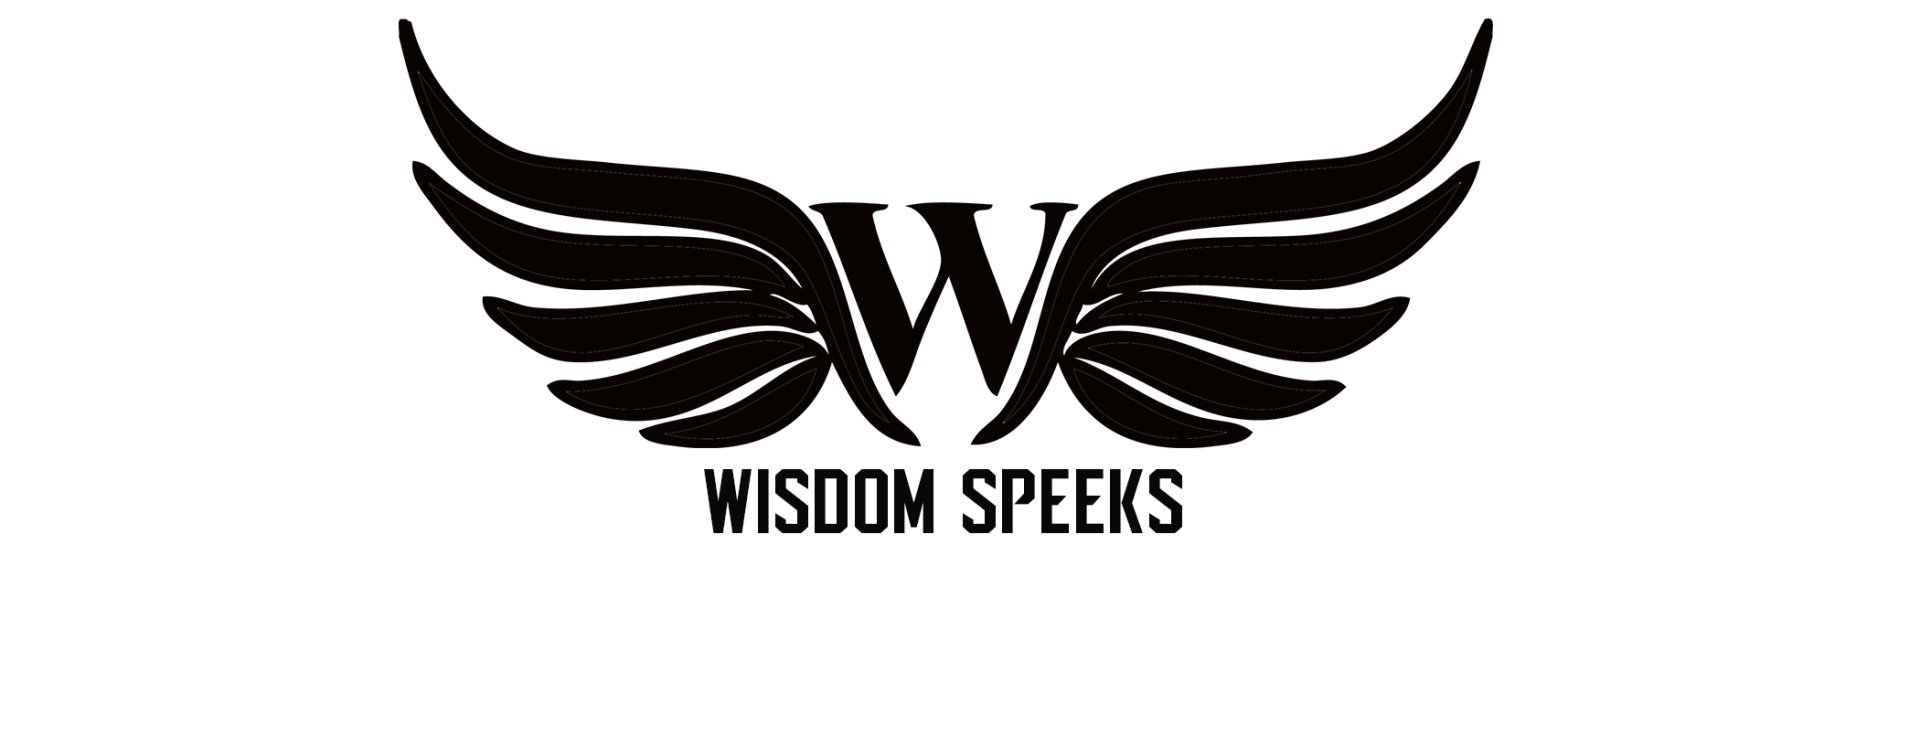 Ws wings blk letterhd logo copy